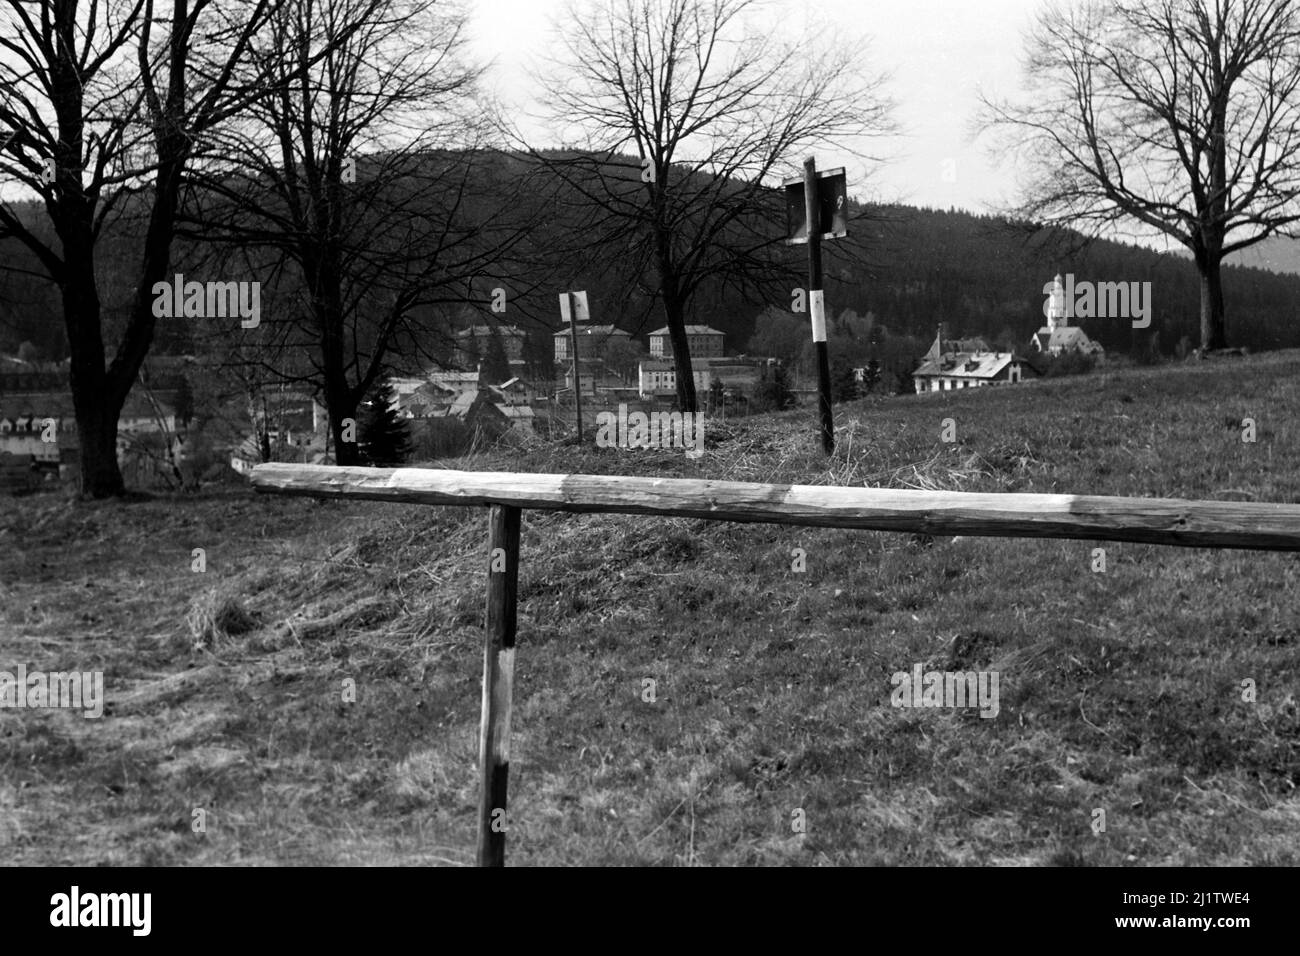 Blick auf den Bayerischen Wald im Zwieseler Umland, 1958. Blick auf den Bayerischen Wald am Stadtrand von Zwiesel, 1958. Stockfoto